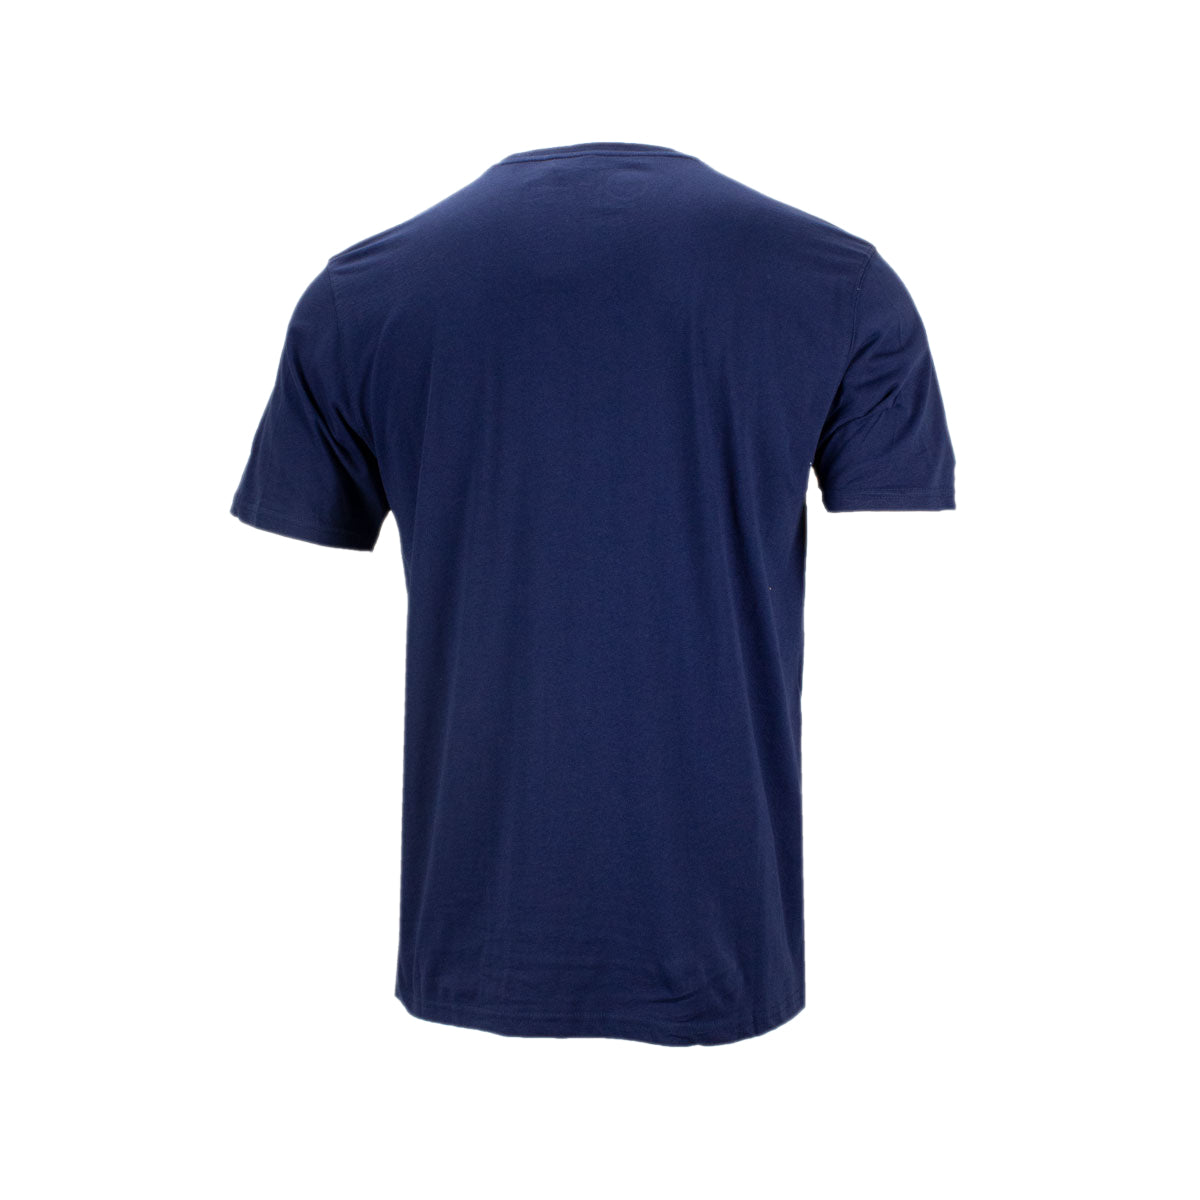 Fanatics NHL Winnipeg Jets kurzarm Herren T-Shirt blau 1878MNVY1HTWJE